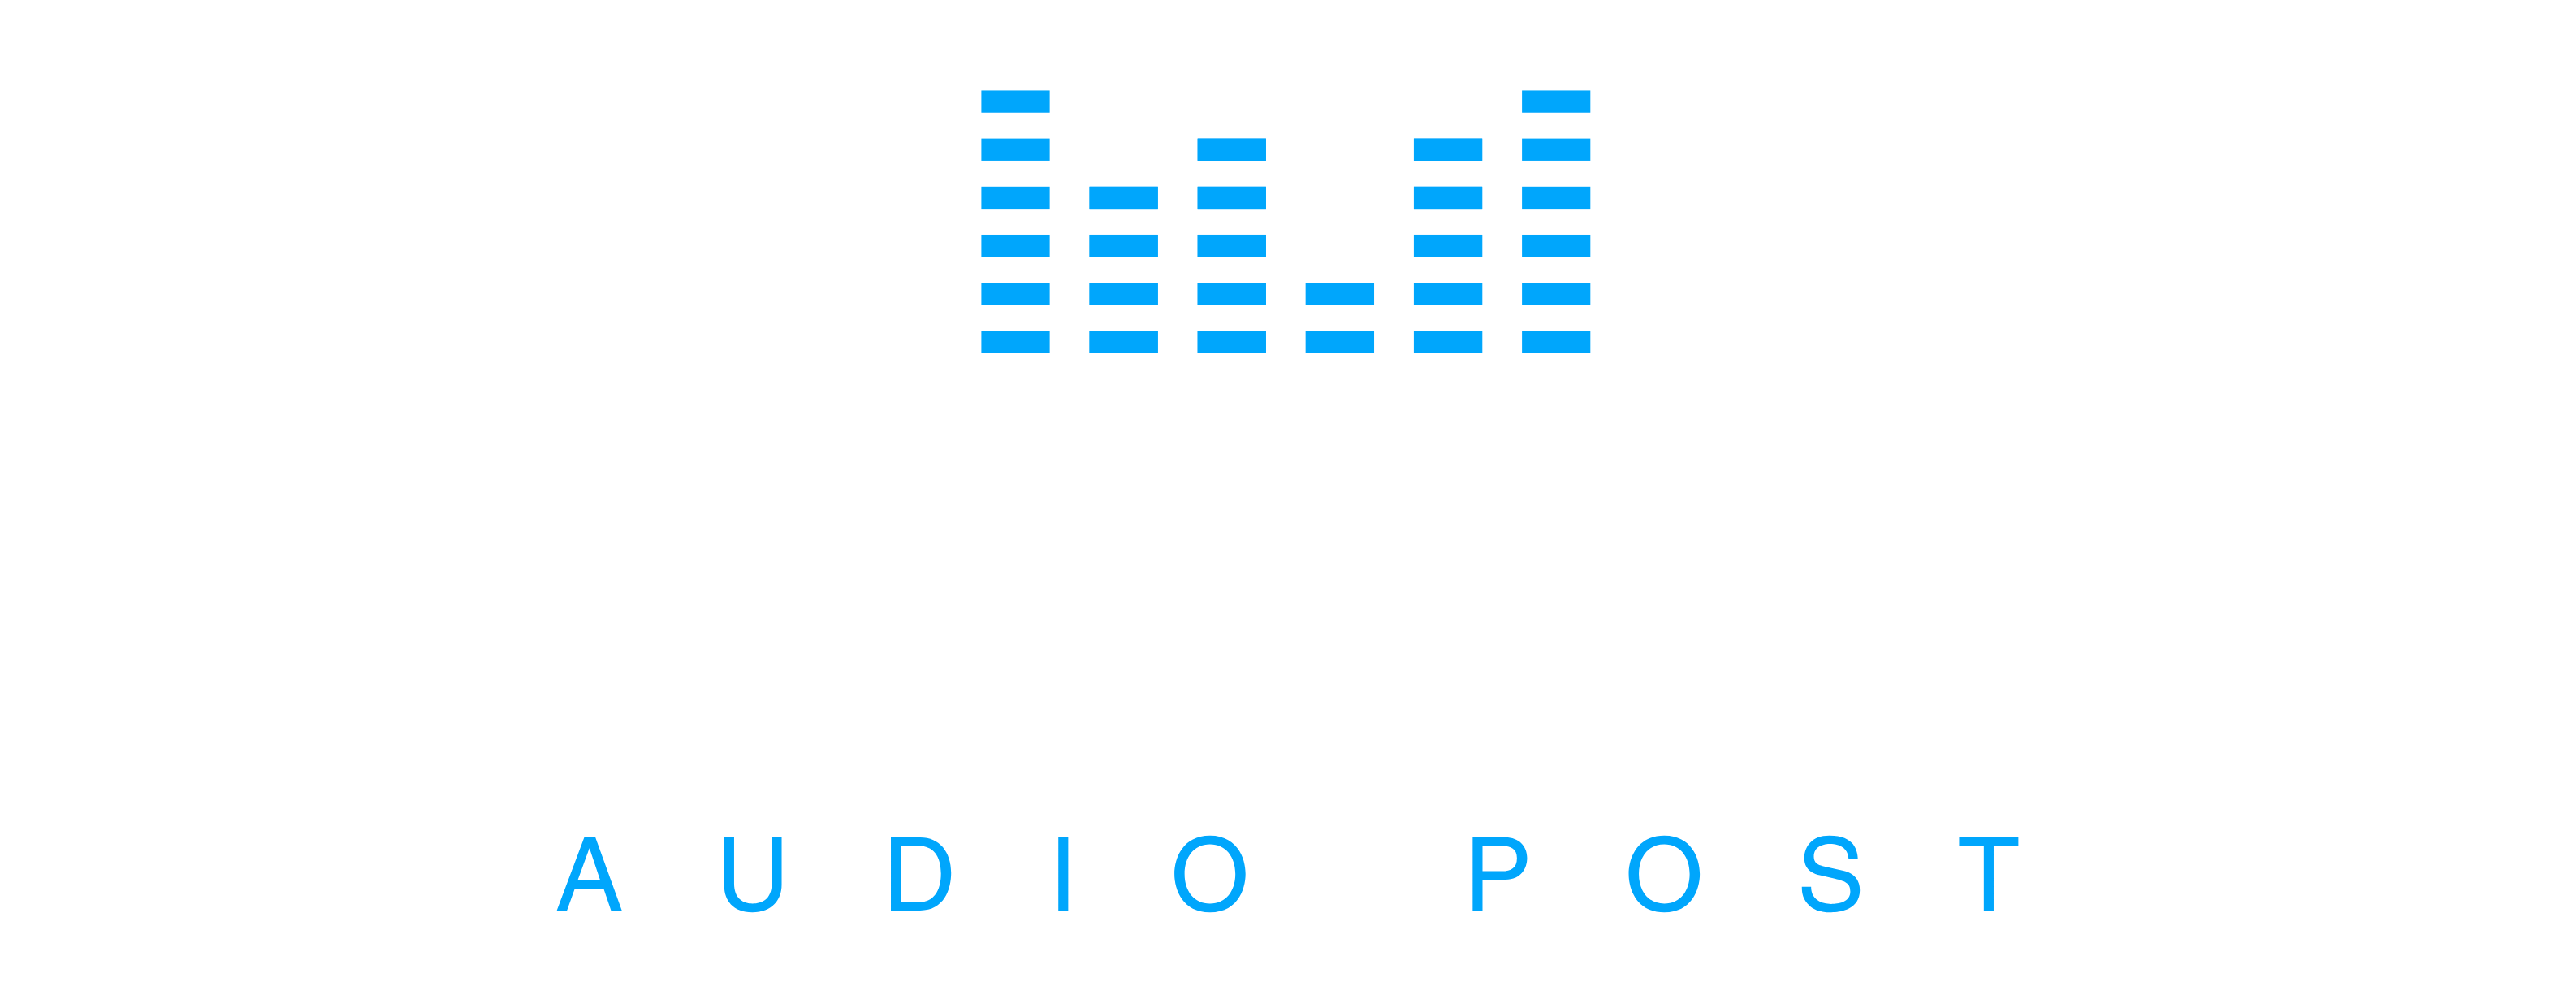 Howe Sound Audio Post